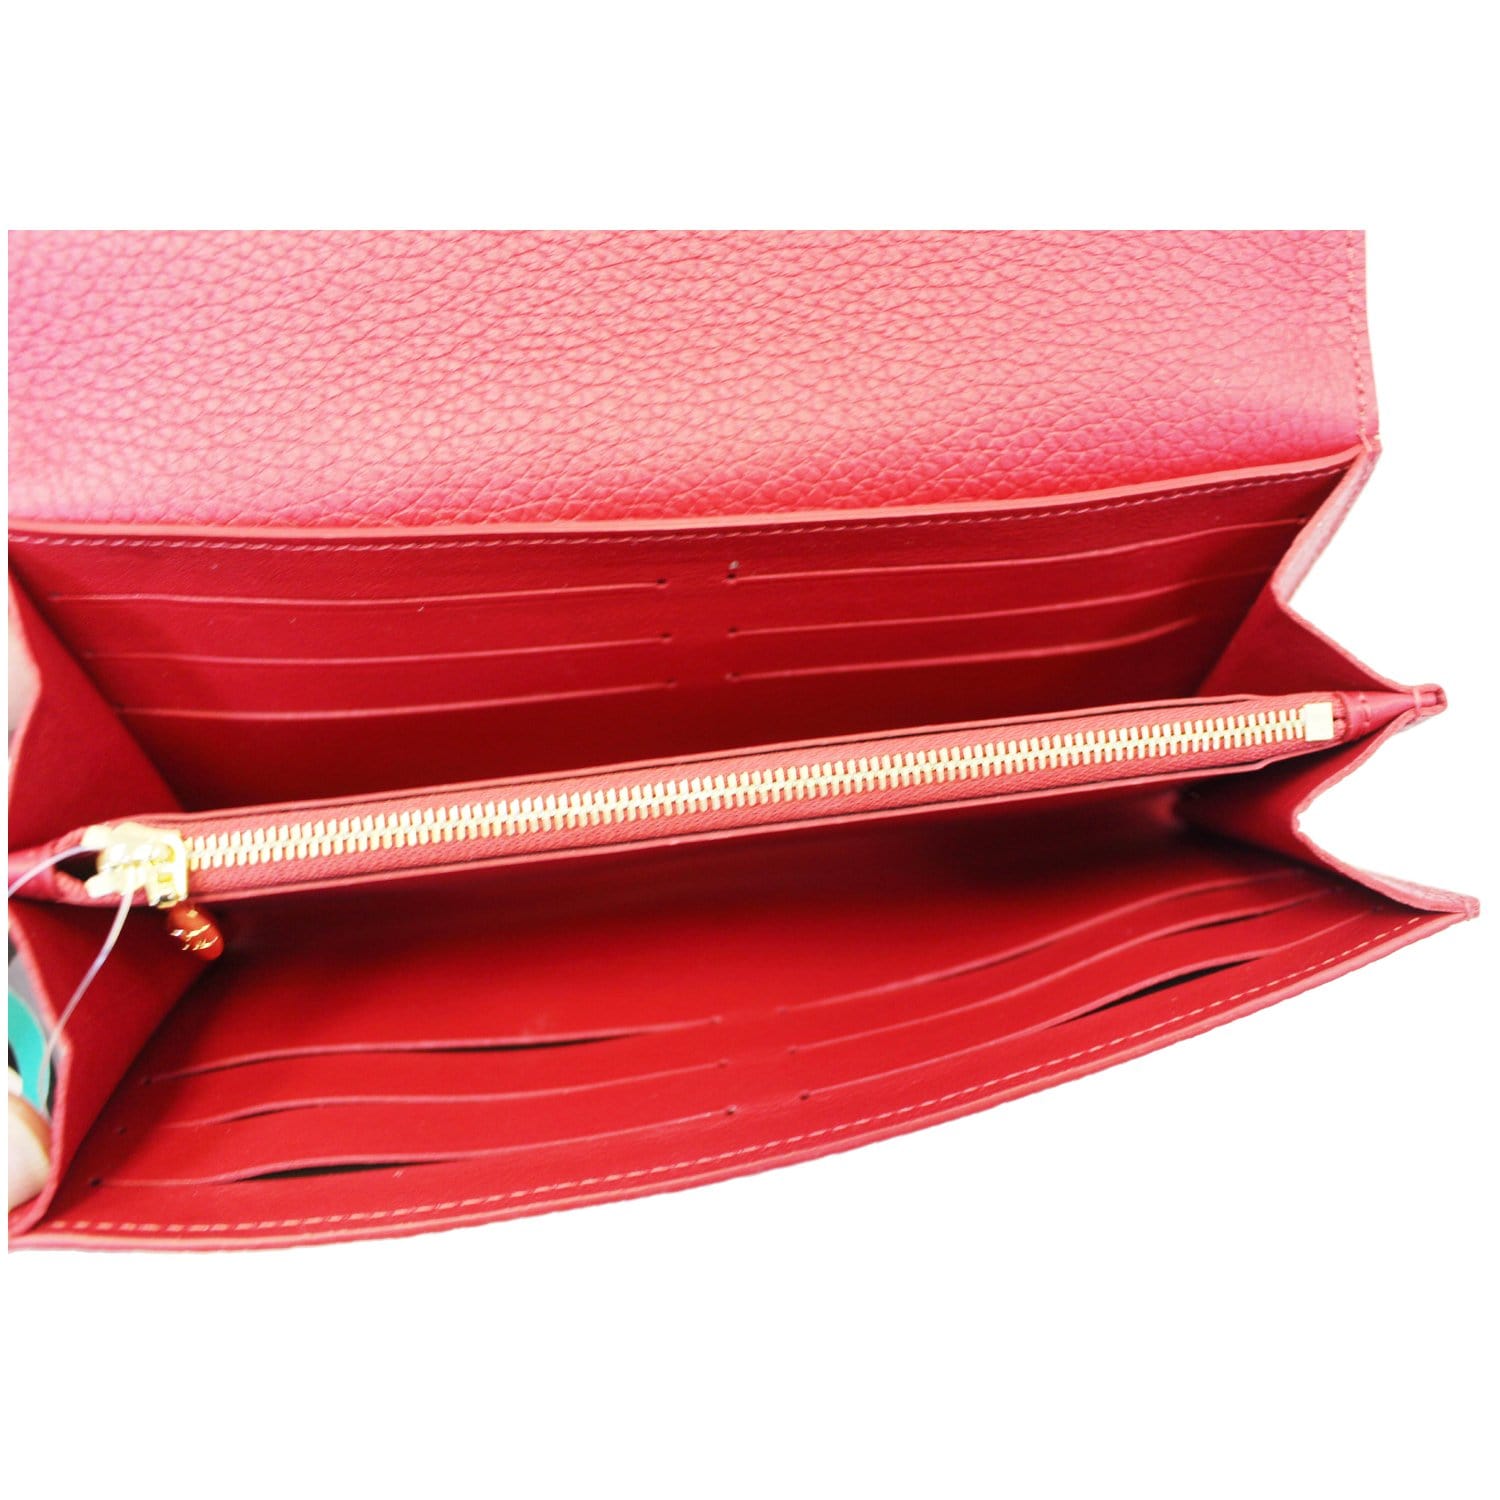 Authentic 2016 Louis Vuitton Capucines Compact Scarlet Red Wallet SPB  GW-301503